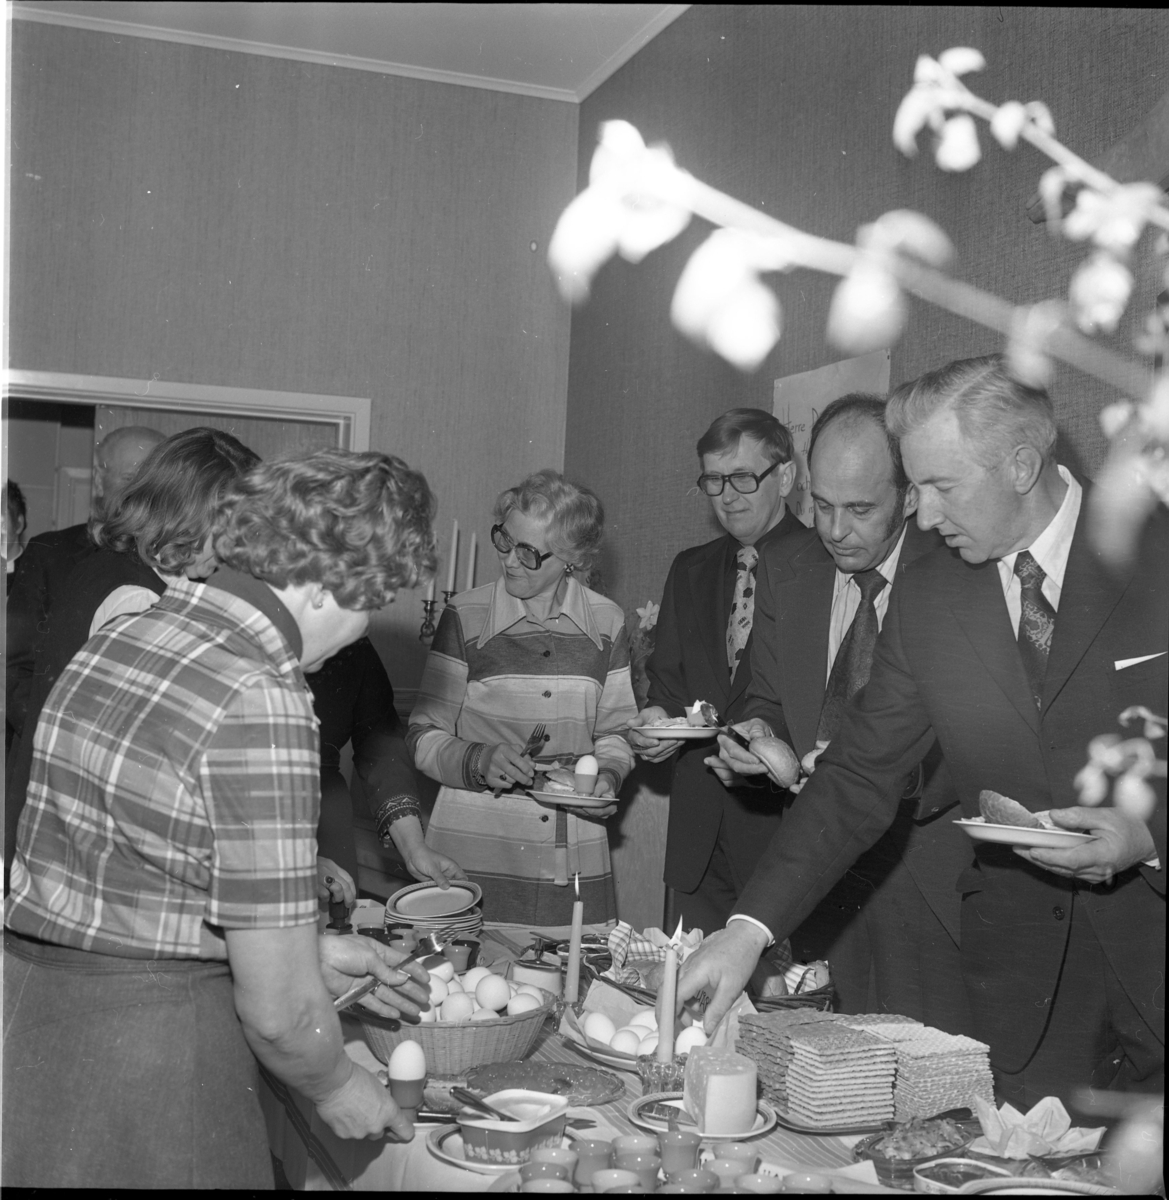 Män och kvinnor plockar från ett uppdukat frukostbord. Det är Ölmstad kyrka som bjuder på påskfrukost. Kvinnan i mitten med glasögon är Birgit Heldebrandt, fotografens hustru. Från höger står Robert Gustafsson, kantor Curt Malmberg och Lennart Fritsell.